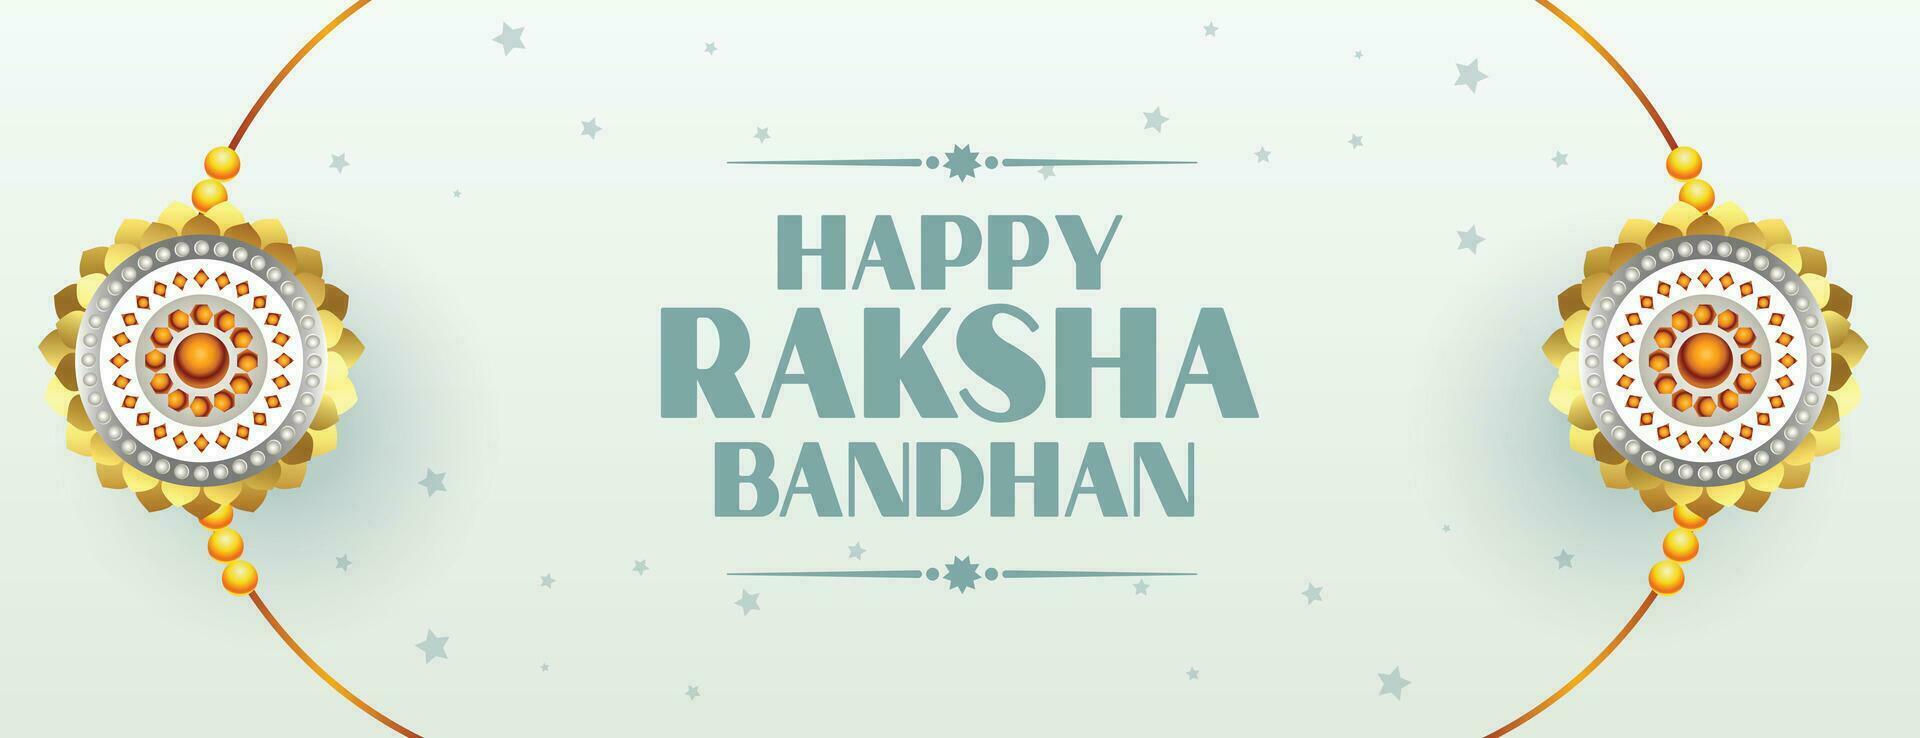 beautiful raksha bandhan traditional banner design vector